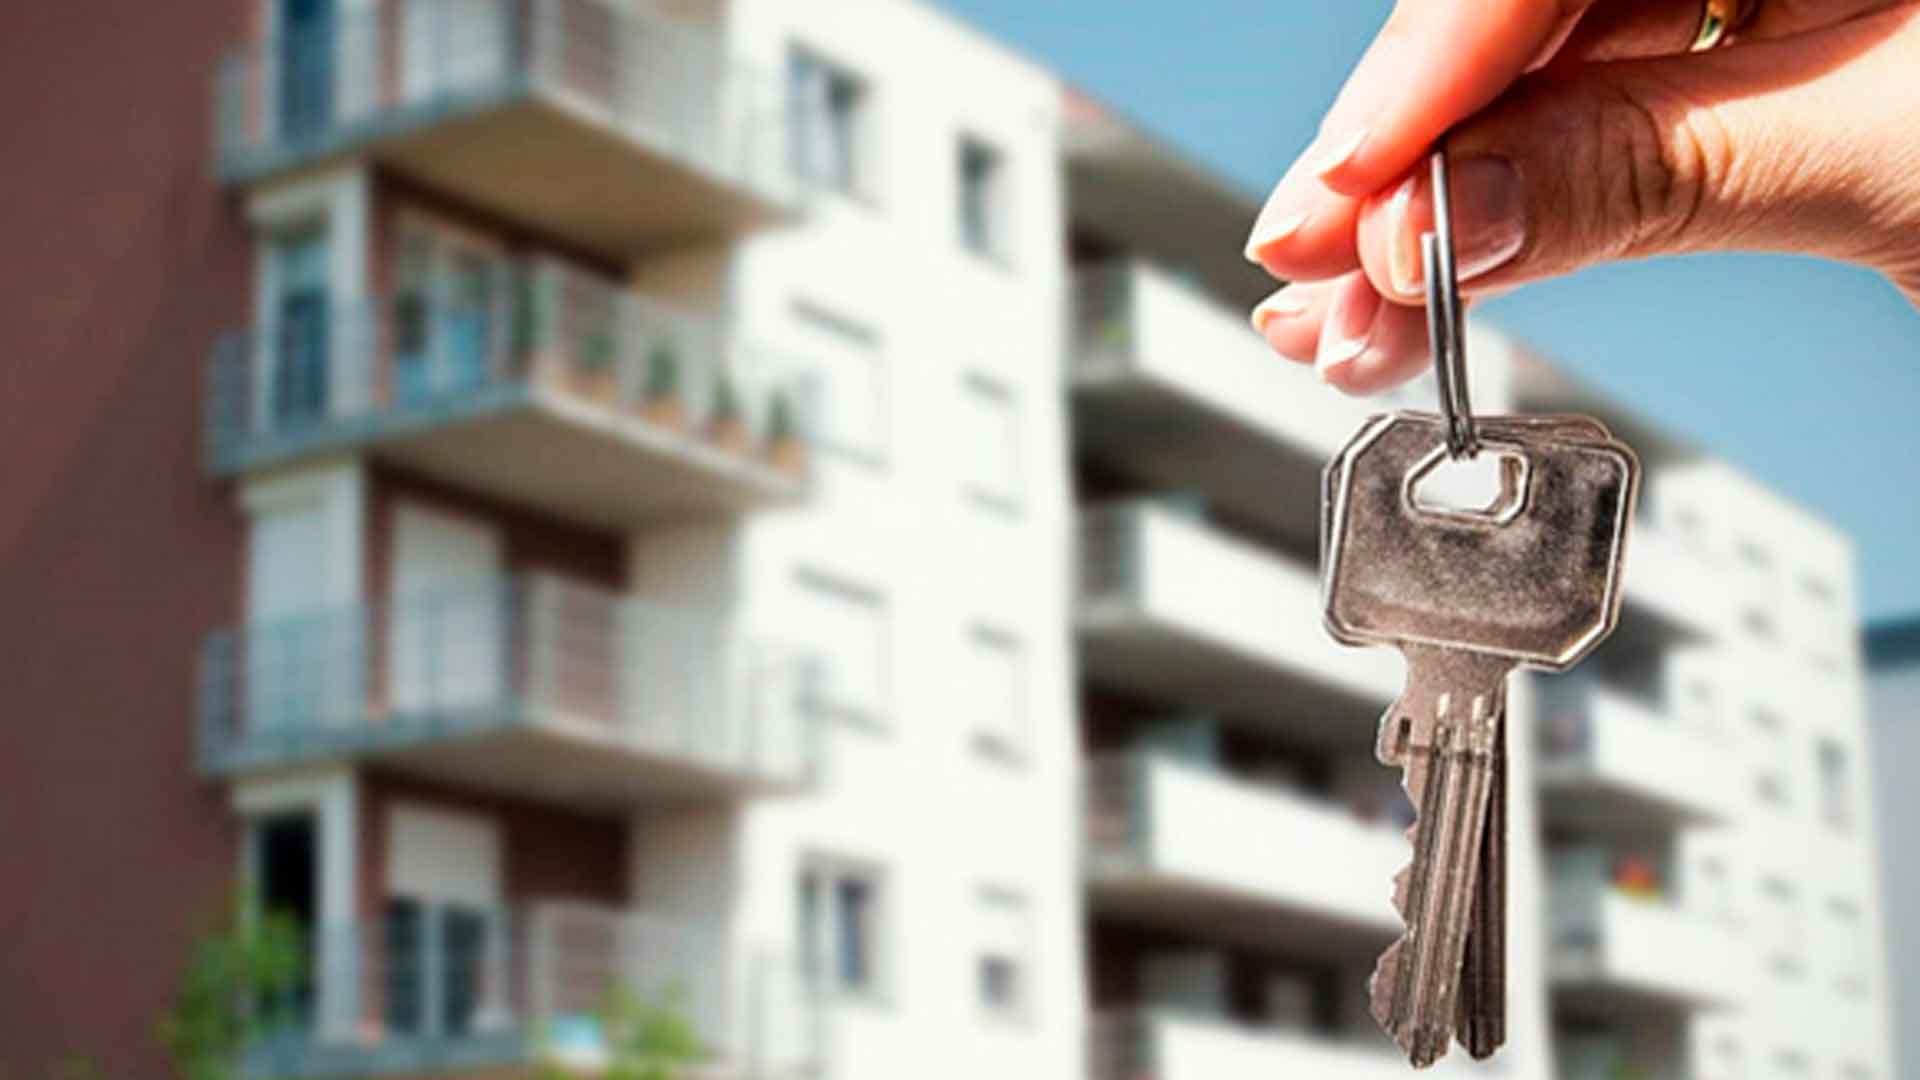 Насчет жилье. Ключи от квартиры. Дом ключи от квартиры. Ключи от квартиры в руке. Квартира ключи.